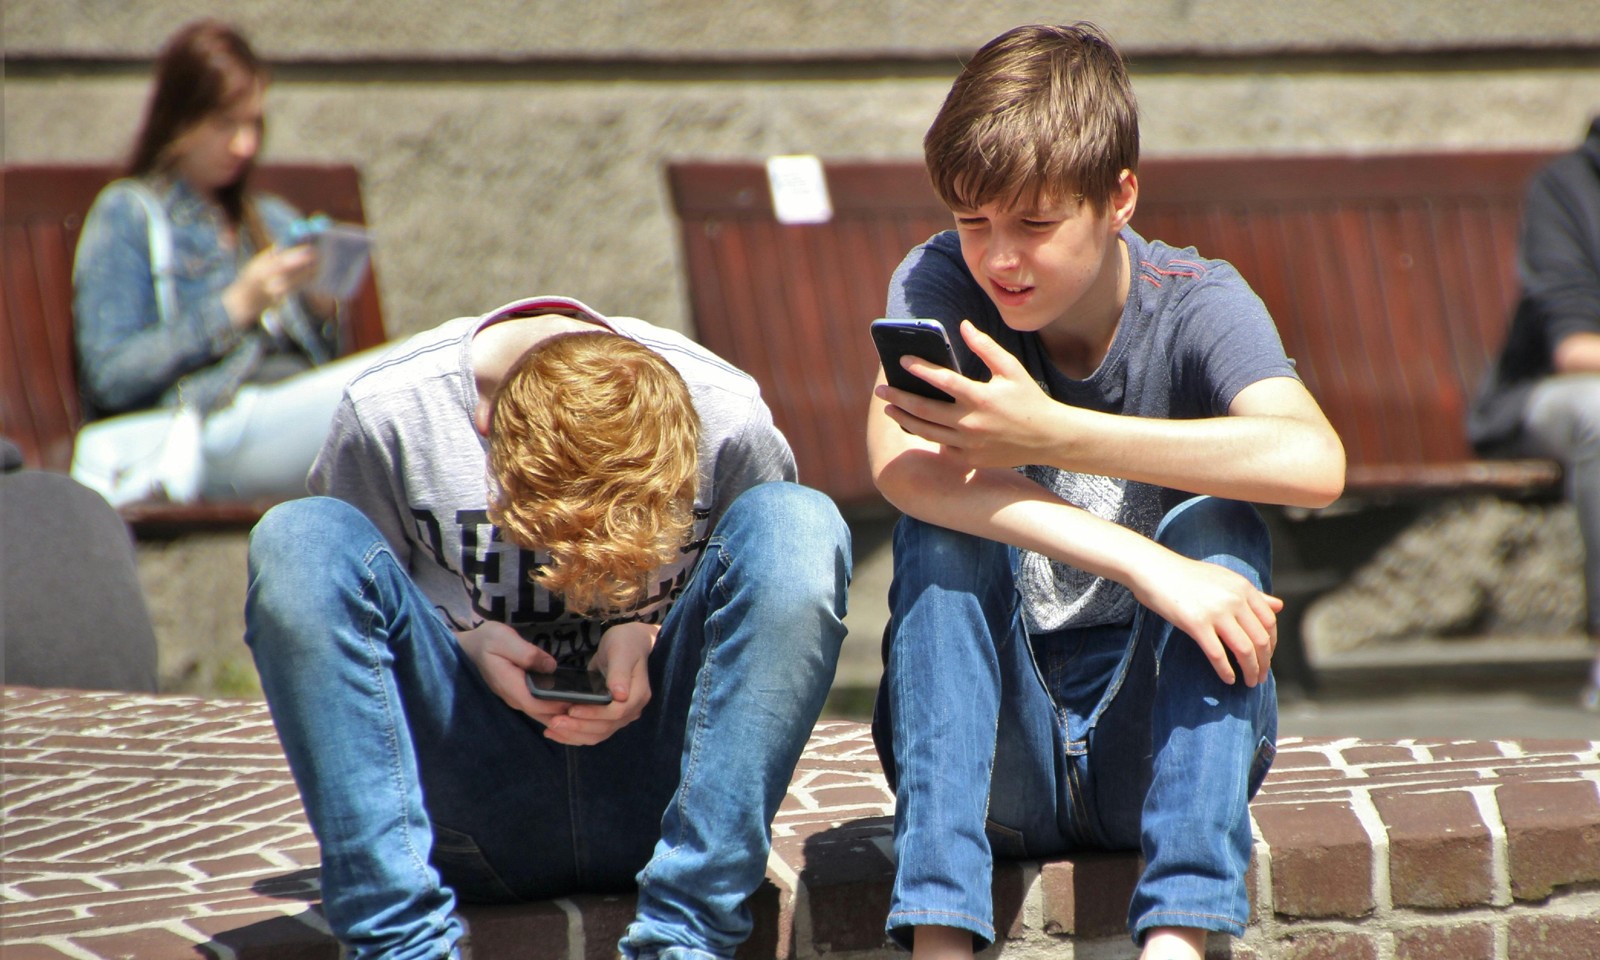 De angstige generatie: De grote impact van smartphones op jongeren.